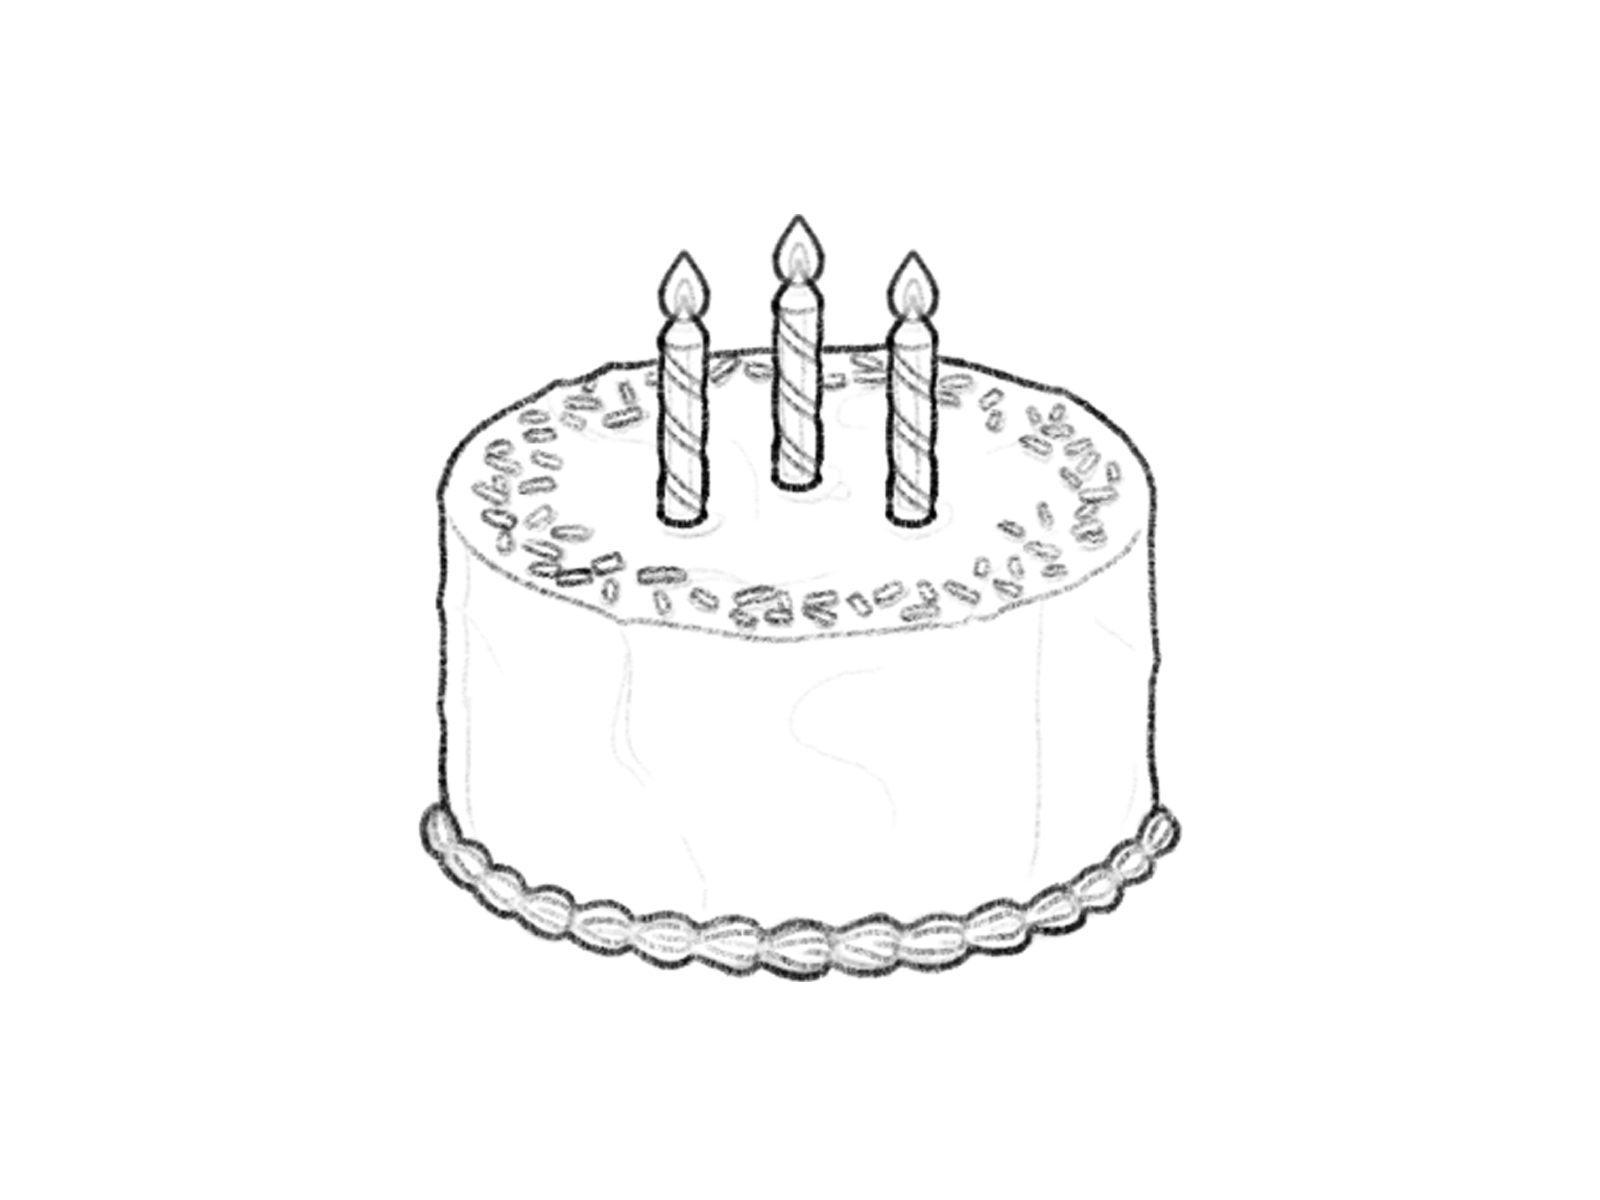 birthday cake sketch